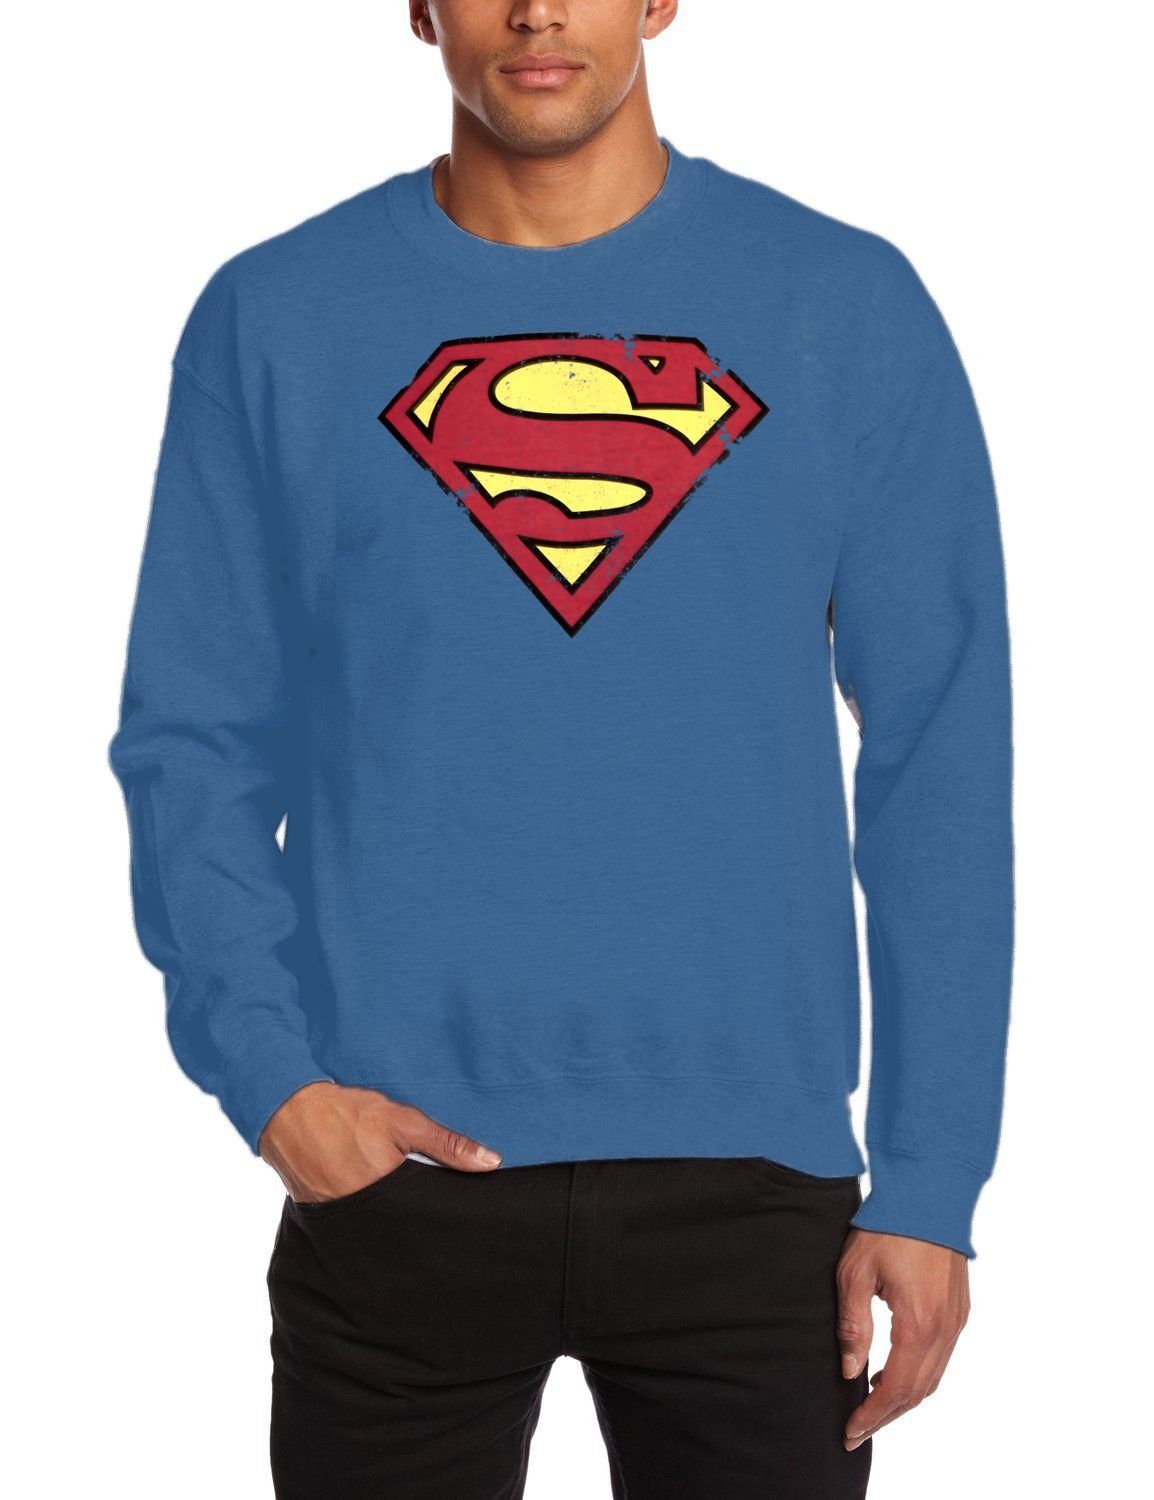 Logo Sweatshirt + Pullover Superman Pulli blau neck denim Jugendliche Erwachsene SWEATSHIRT crew SUPERMAN